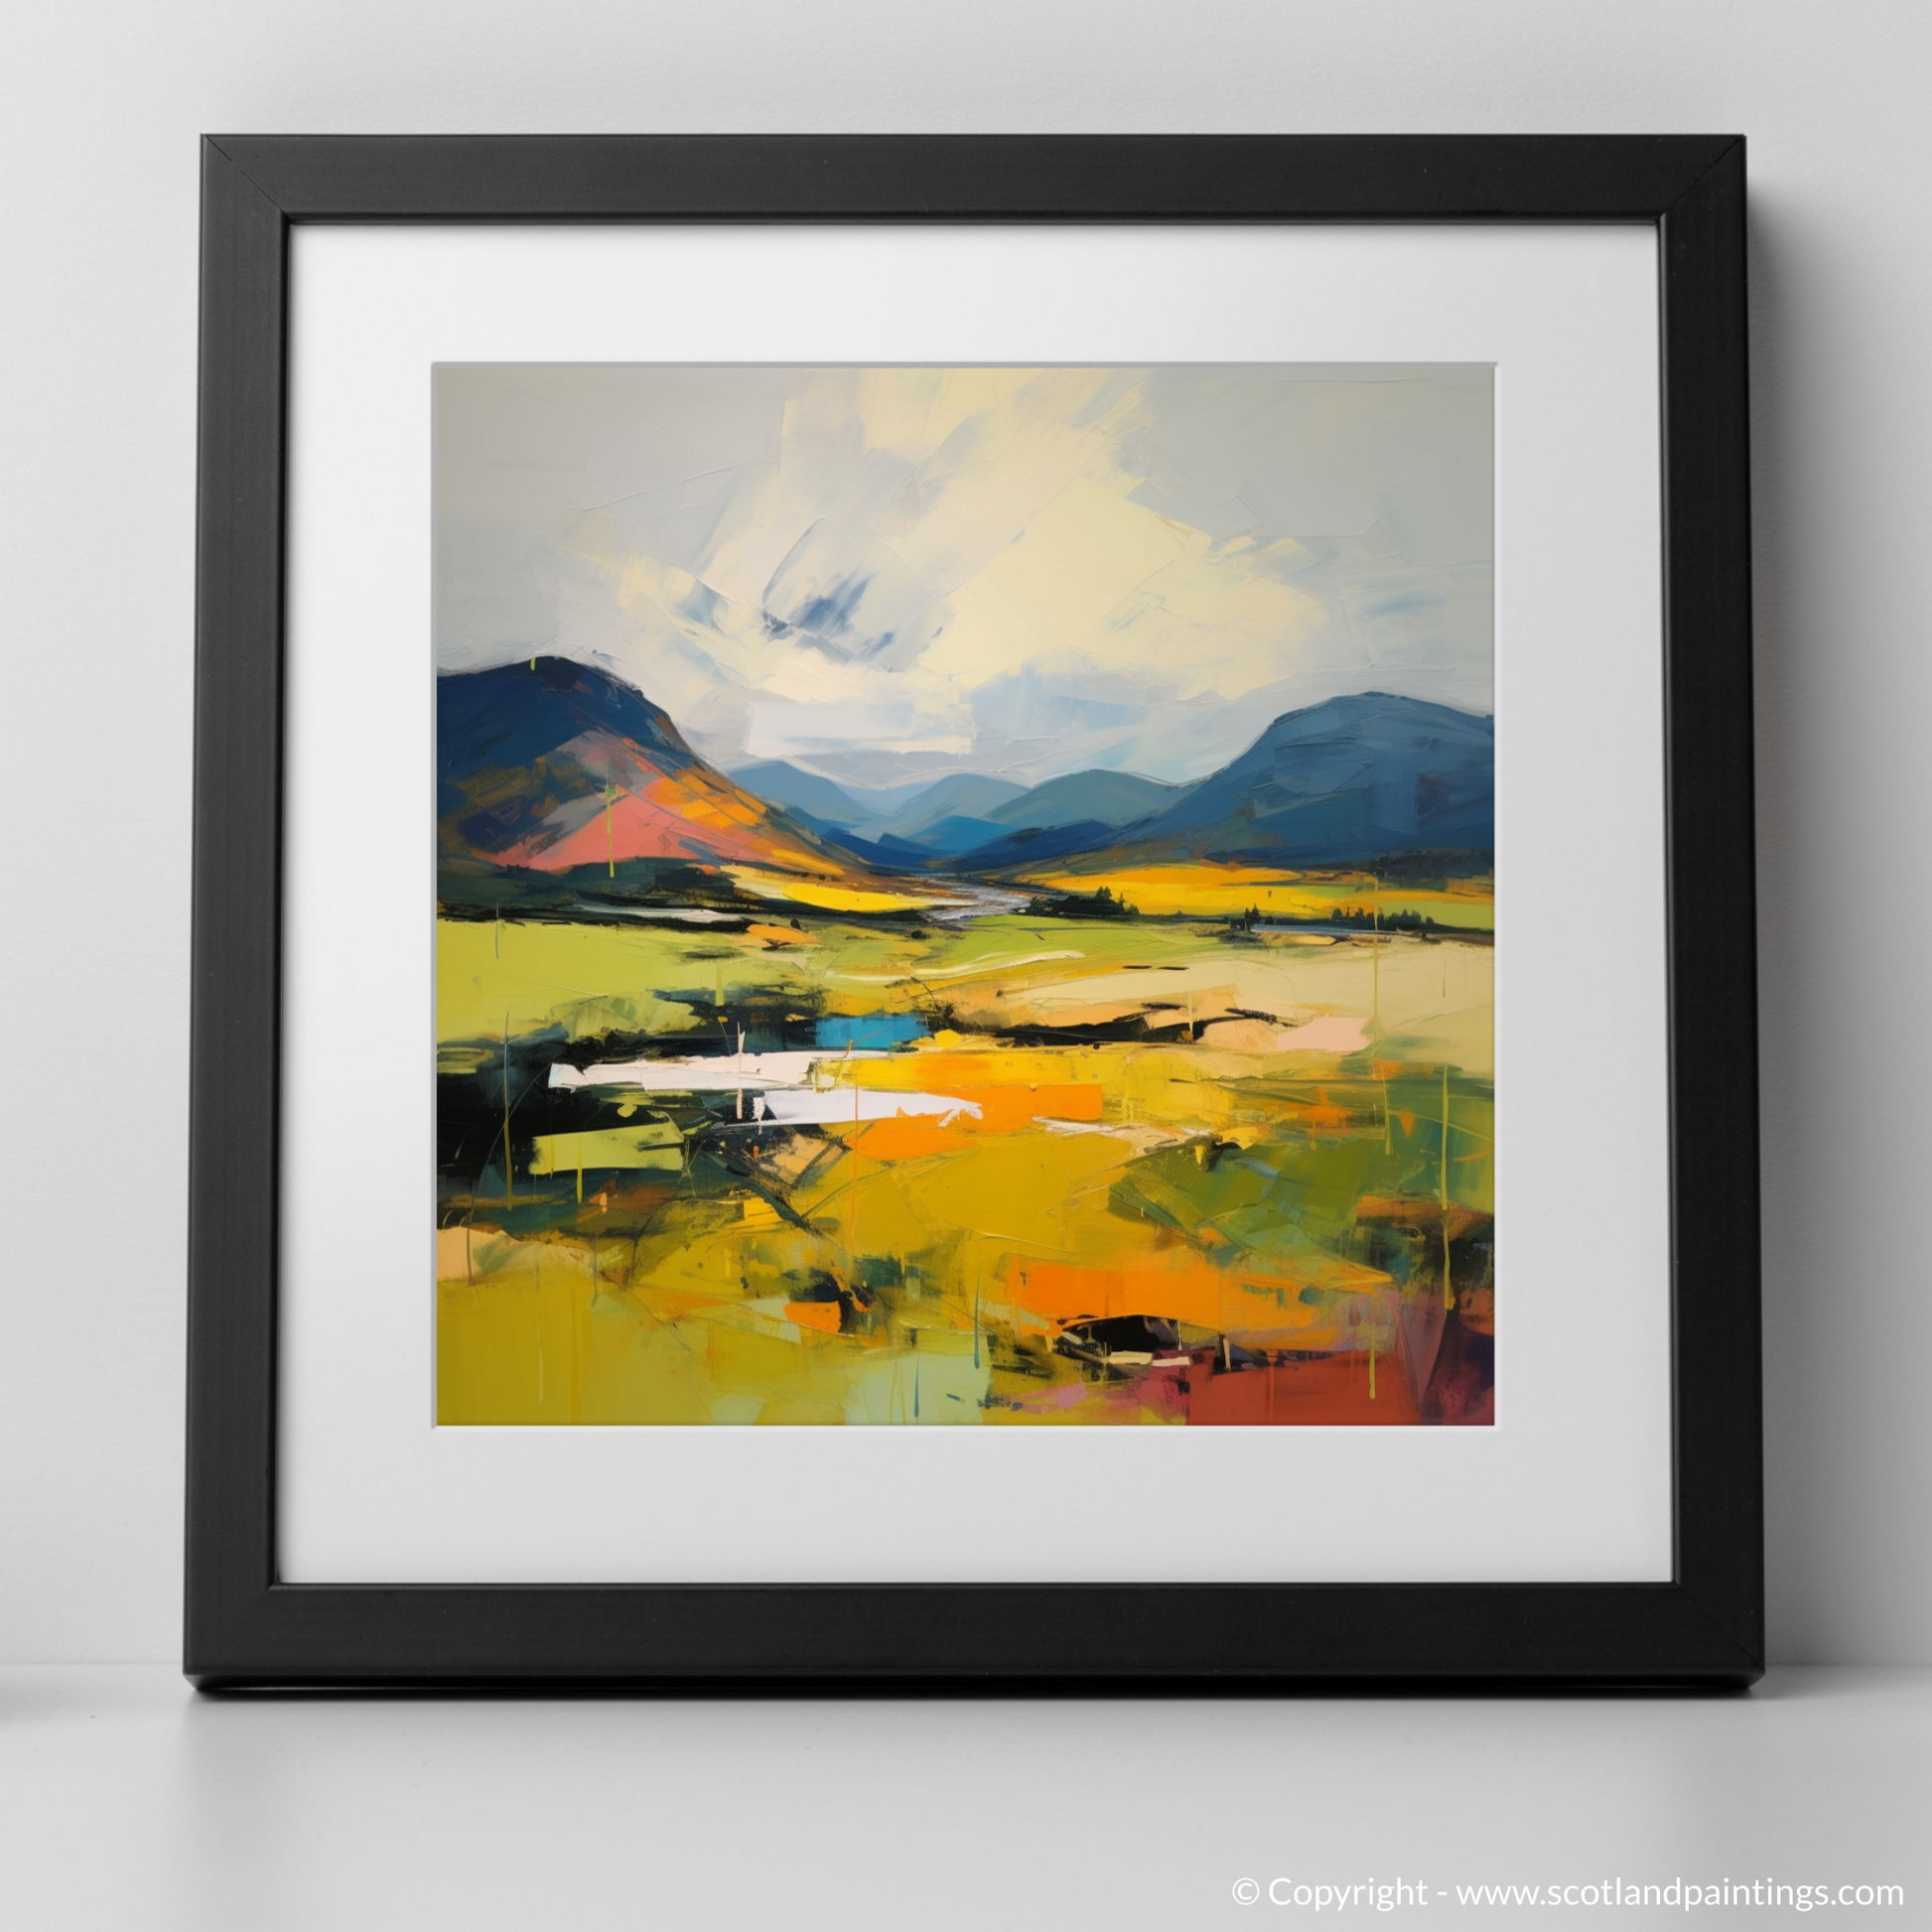 Art Print of Glen Garry, Highlands in summer with a black frame